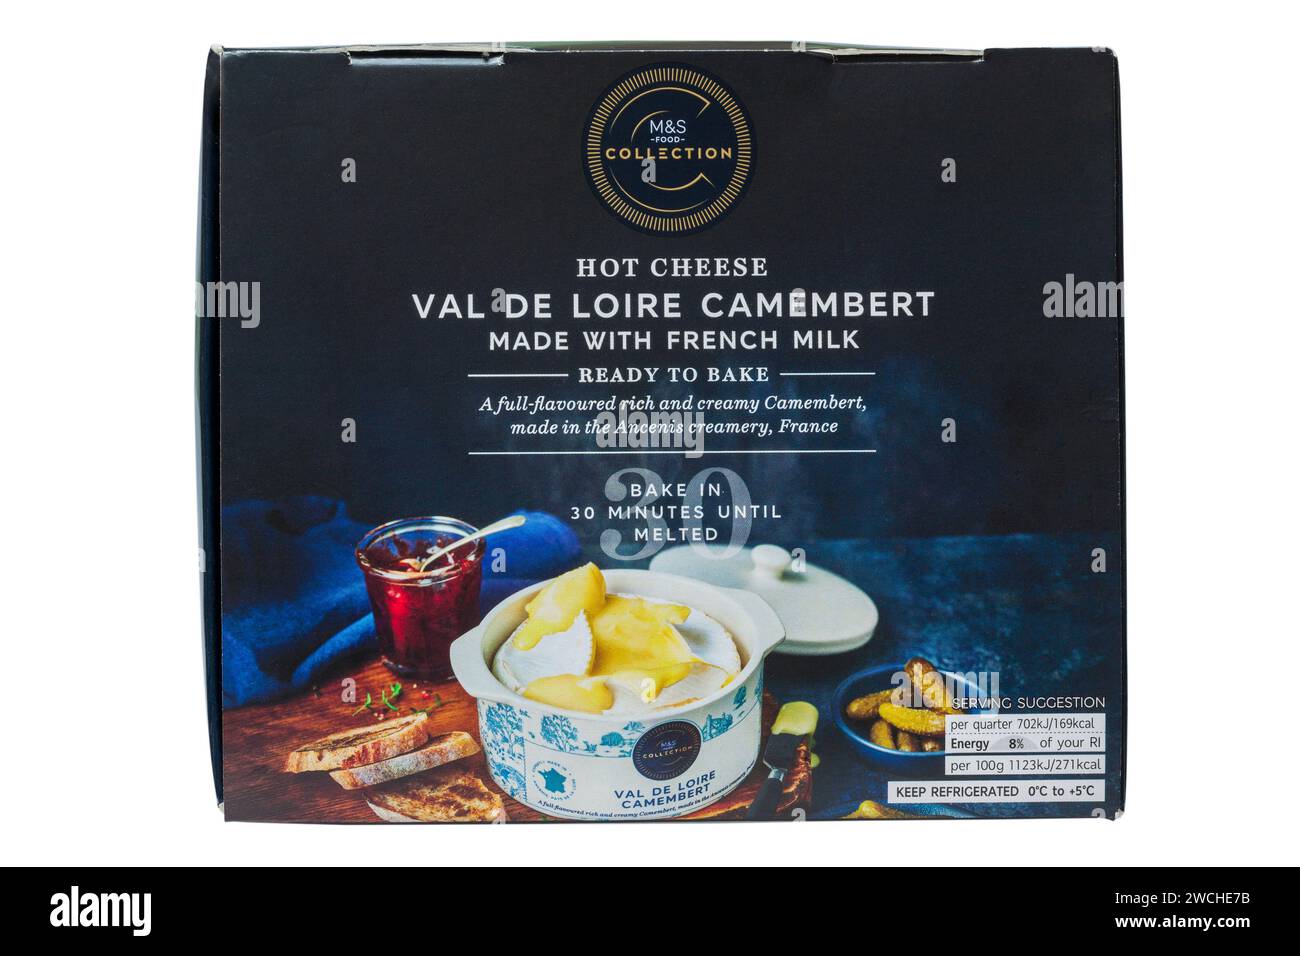 Hot Cheese Val de Loire Camembert von M&S mit französischem Käse, fertig zum Backen isoliert auf weißem Hintergrund Stockfoto